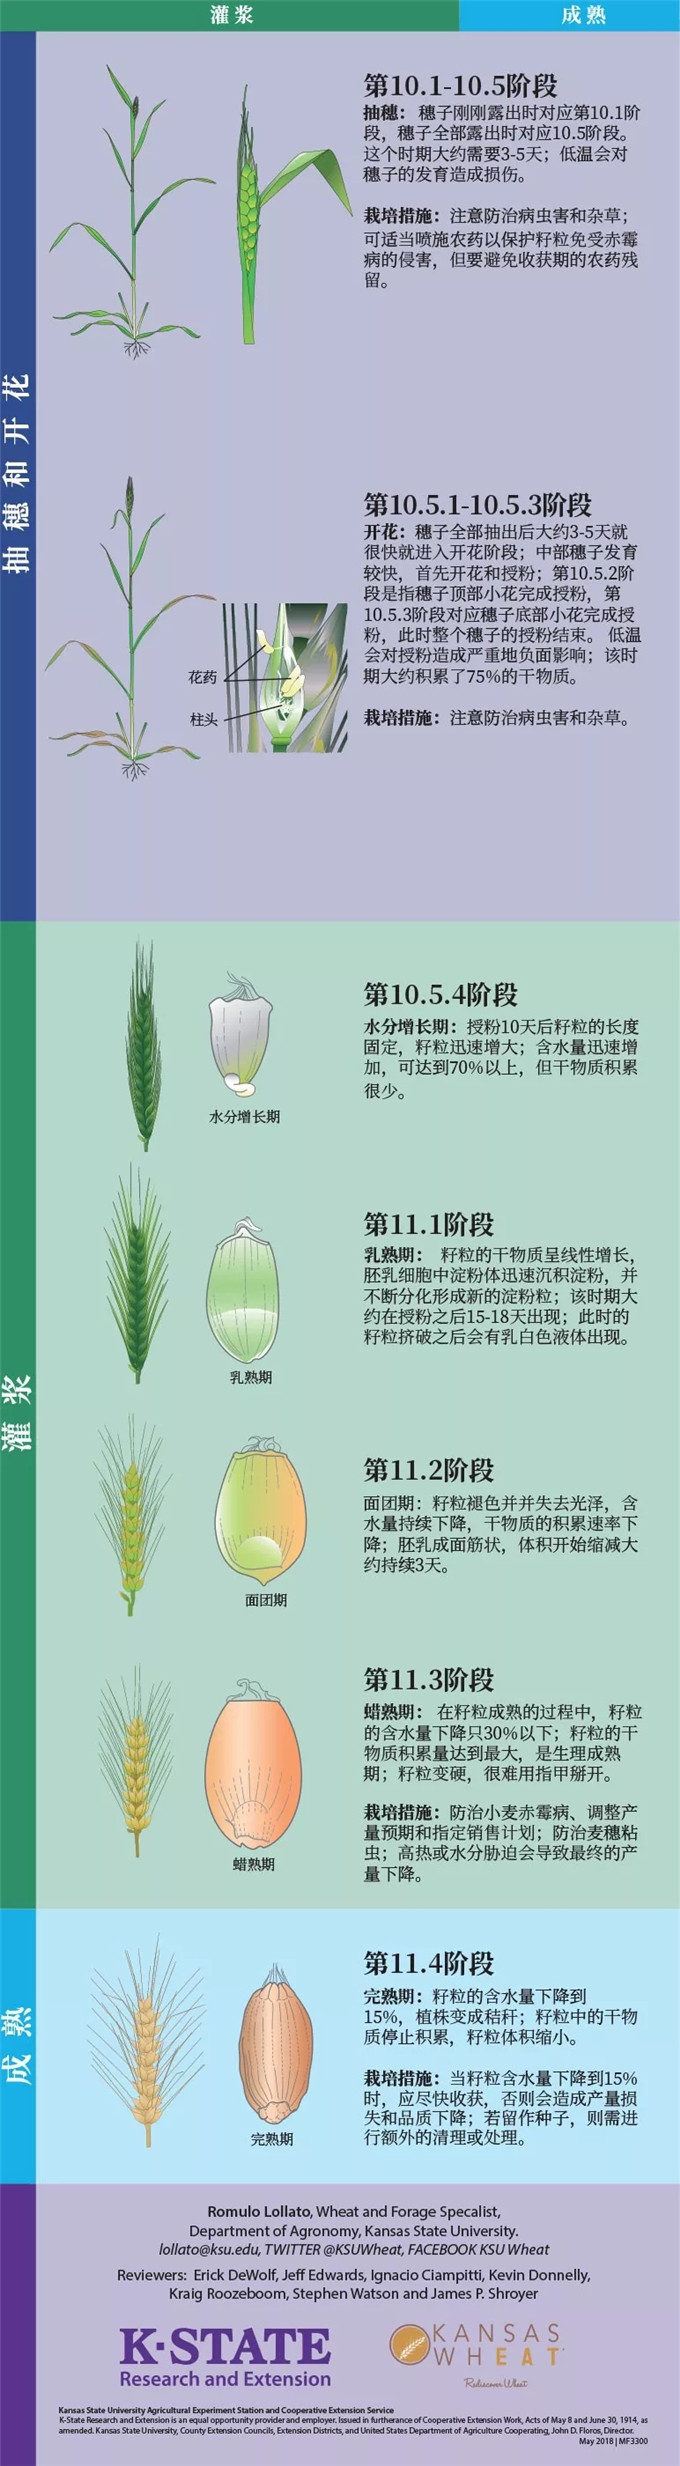 科普小麦的一生从种子的萌发到完熟